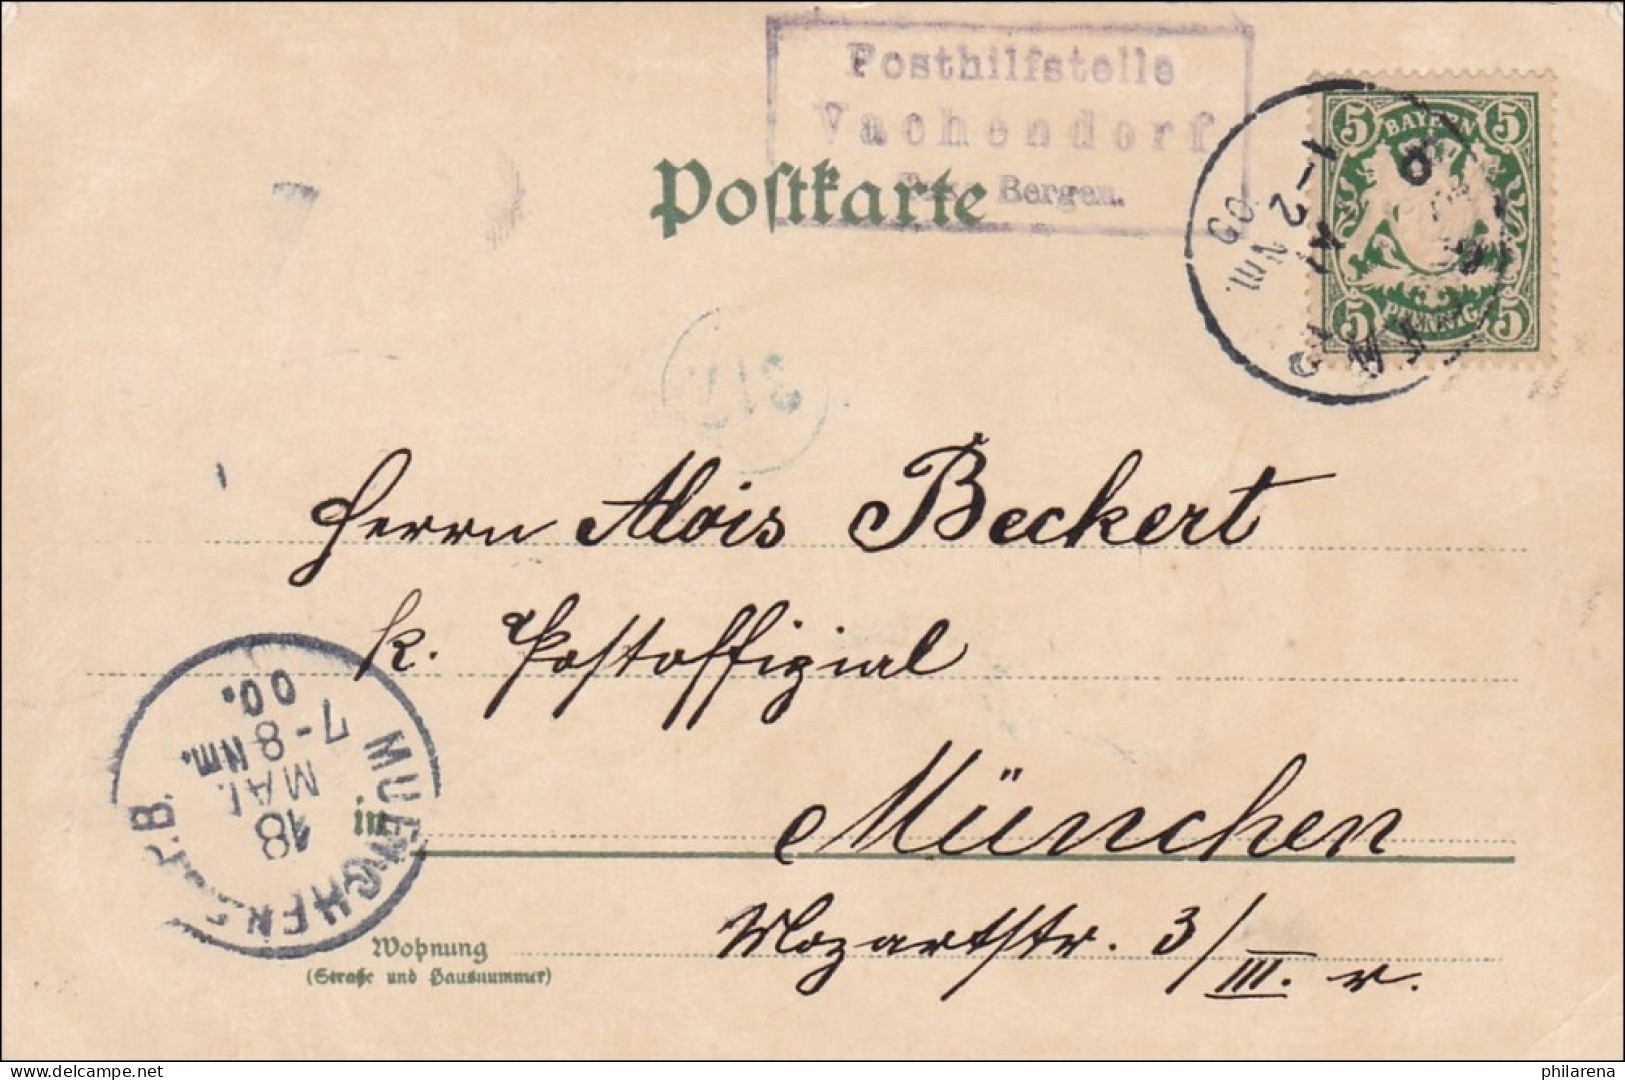 Bayern: 1900, Postkarte Von Vachendorf Nach München, Seltener Stempel - Lettres & Documents